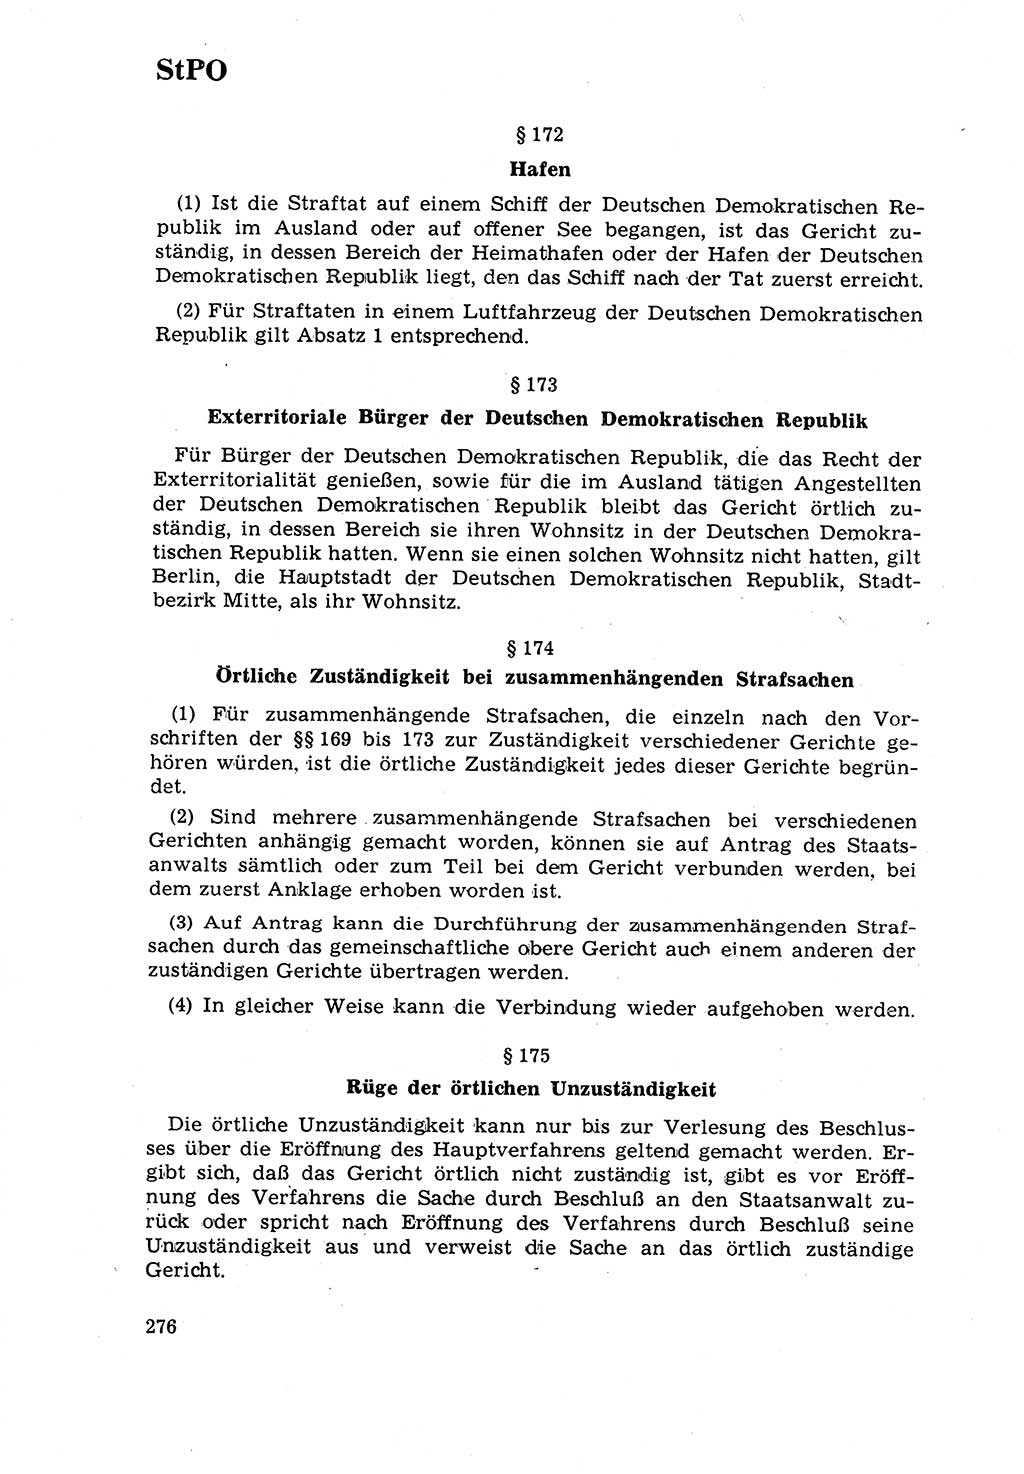 Strafrecht [Deutsche Demokratische Republik (DDR)] 1968, Seite 276 (Strafr. DDR 1968, S. 276)